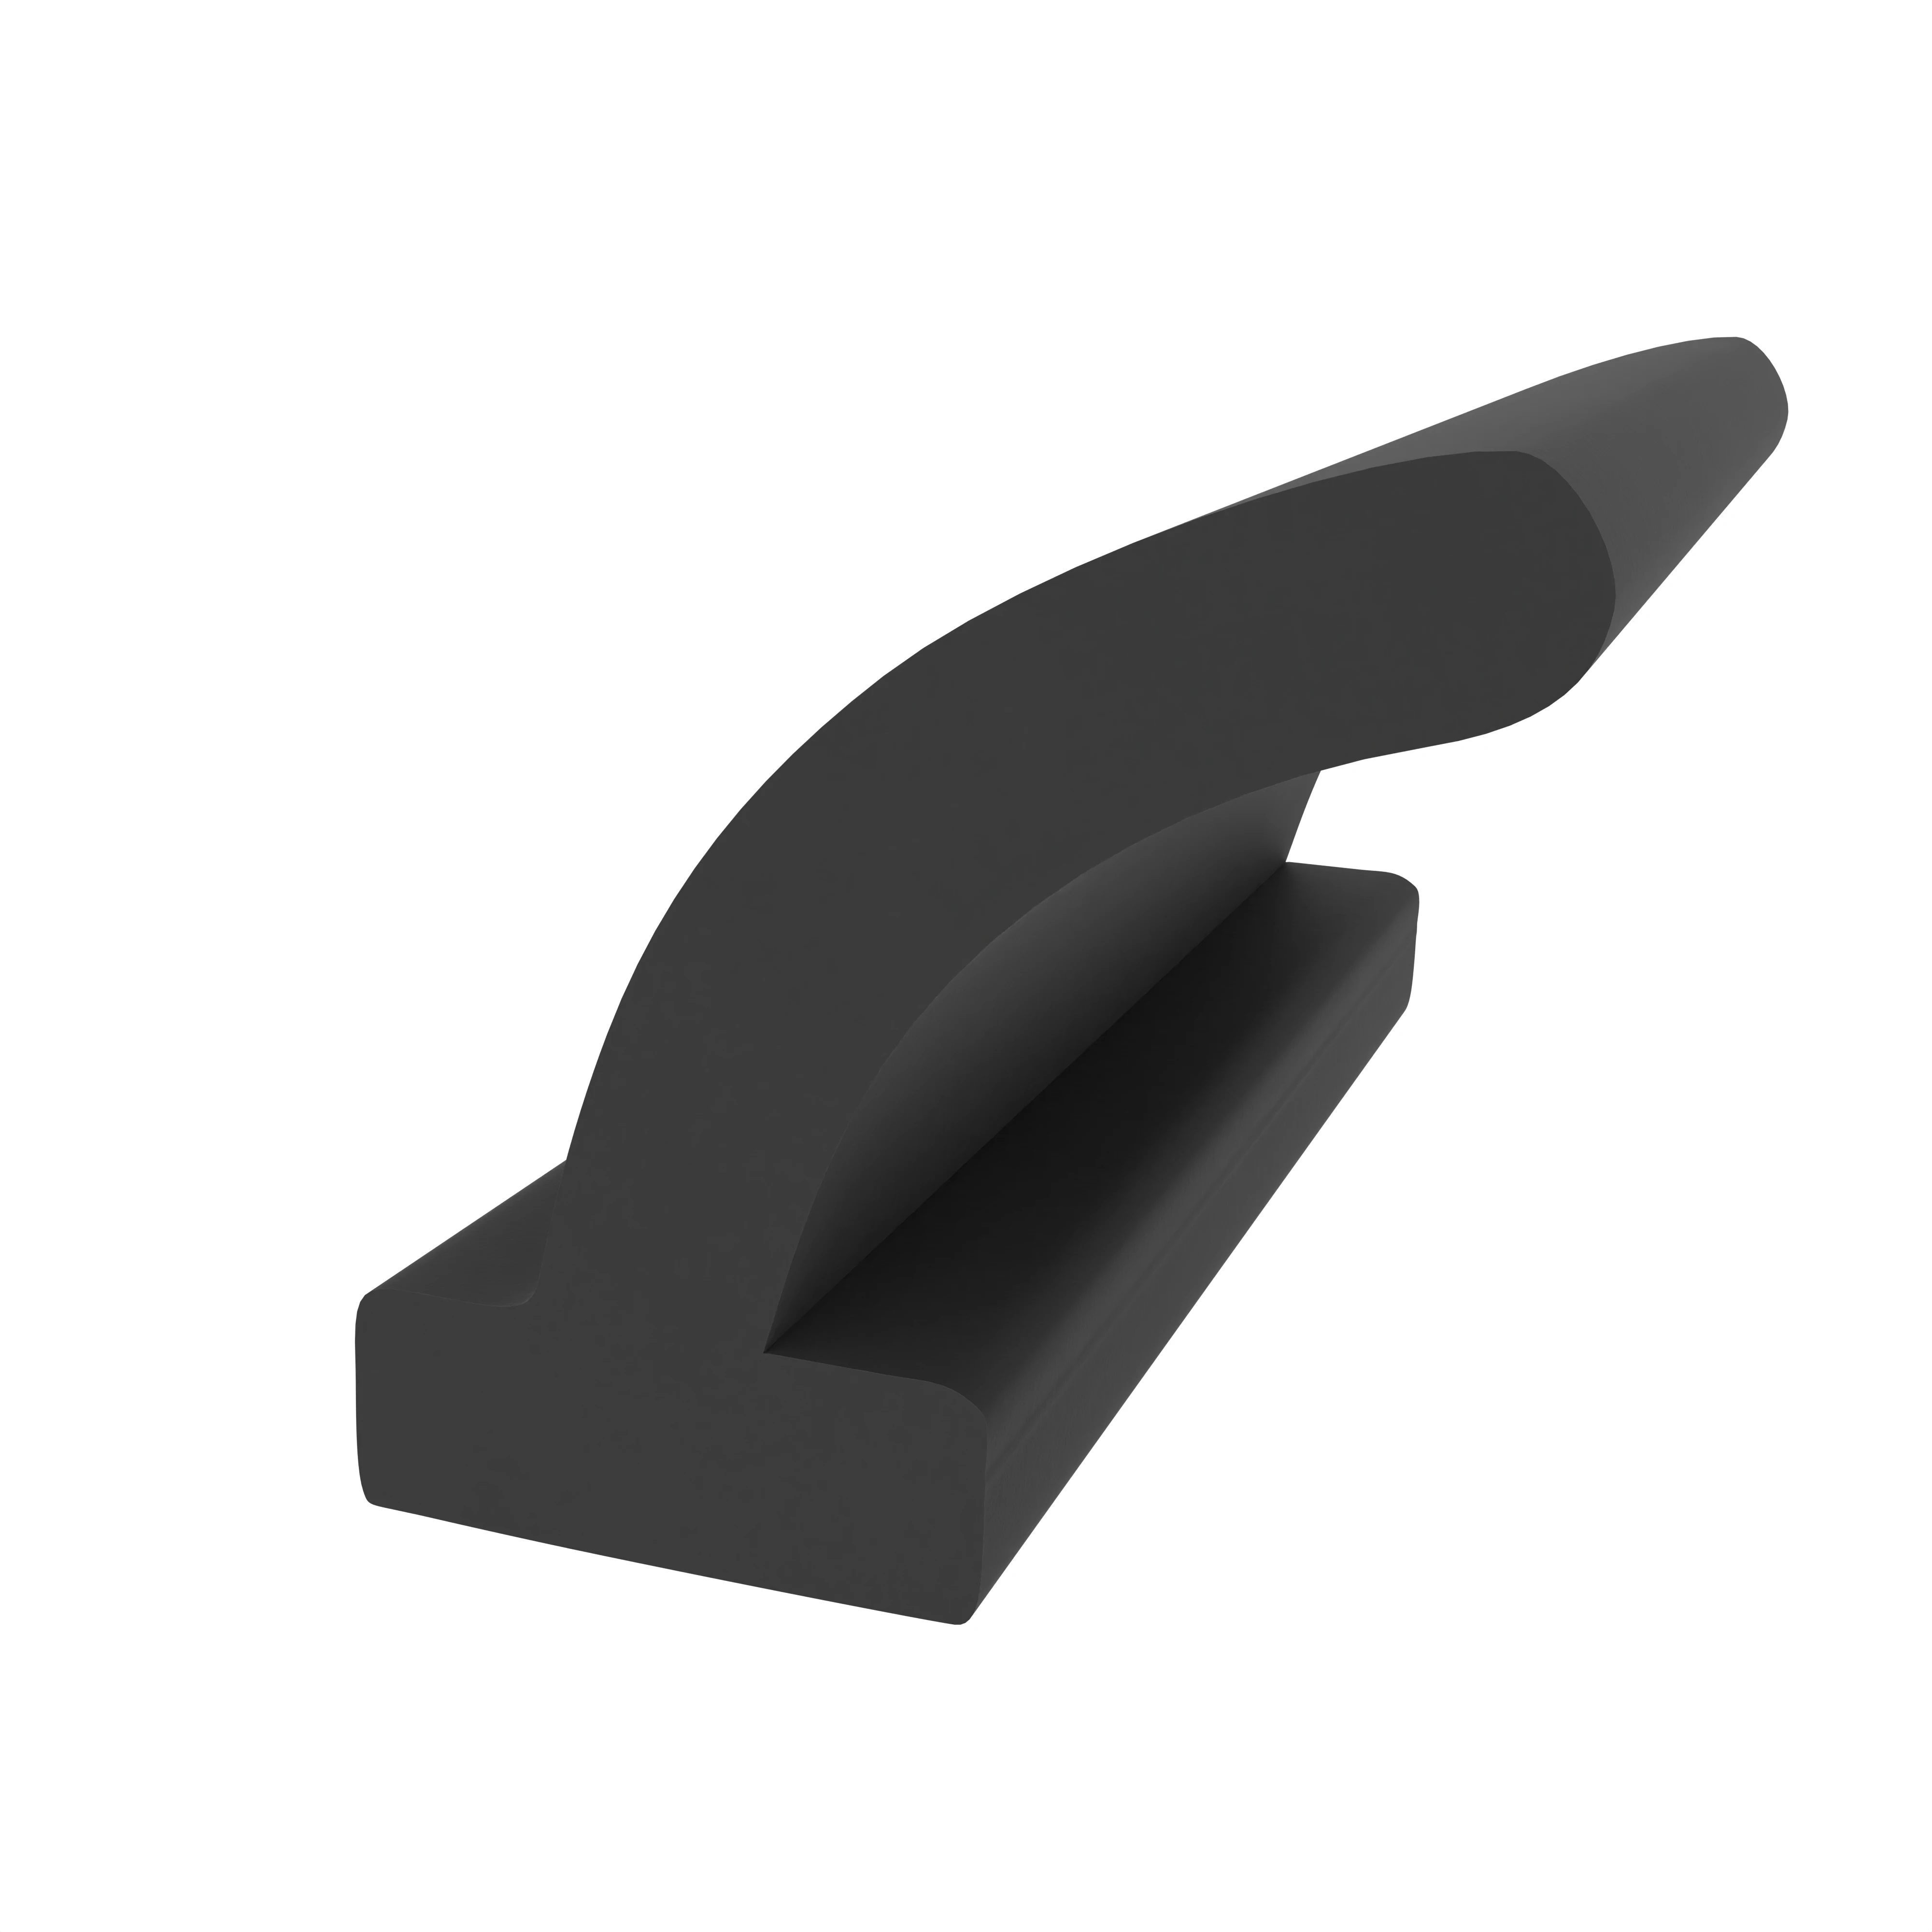 Anschlagdichtung mit Lippeund glattem Fuß | 8 mm Höhe | Farbe: schwarz